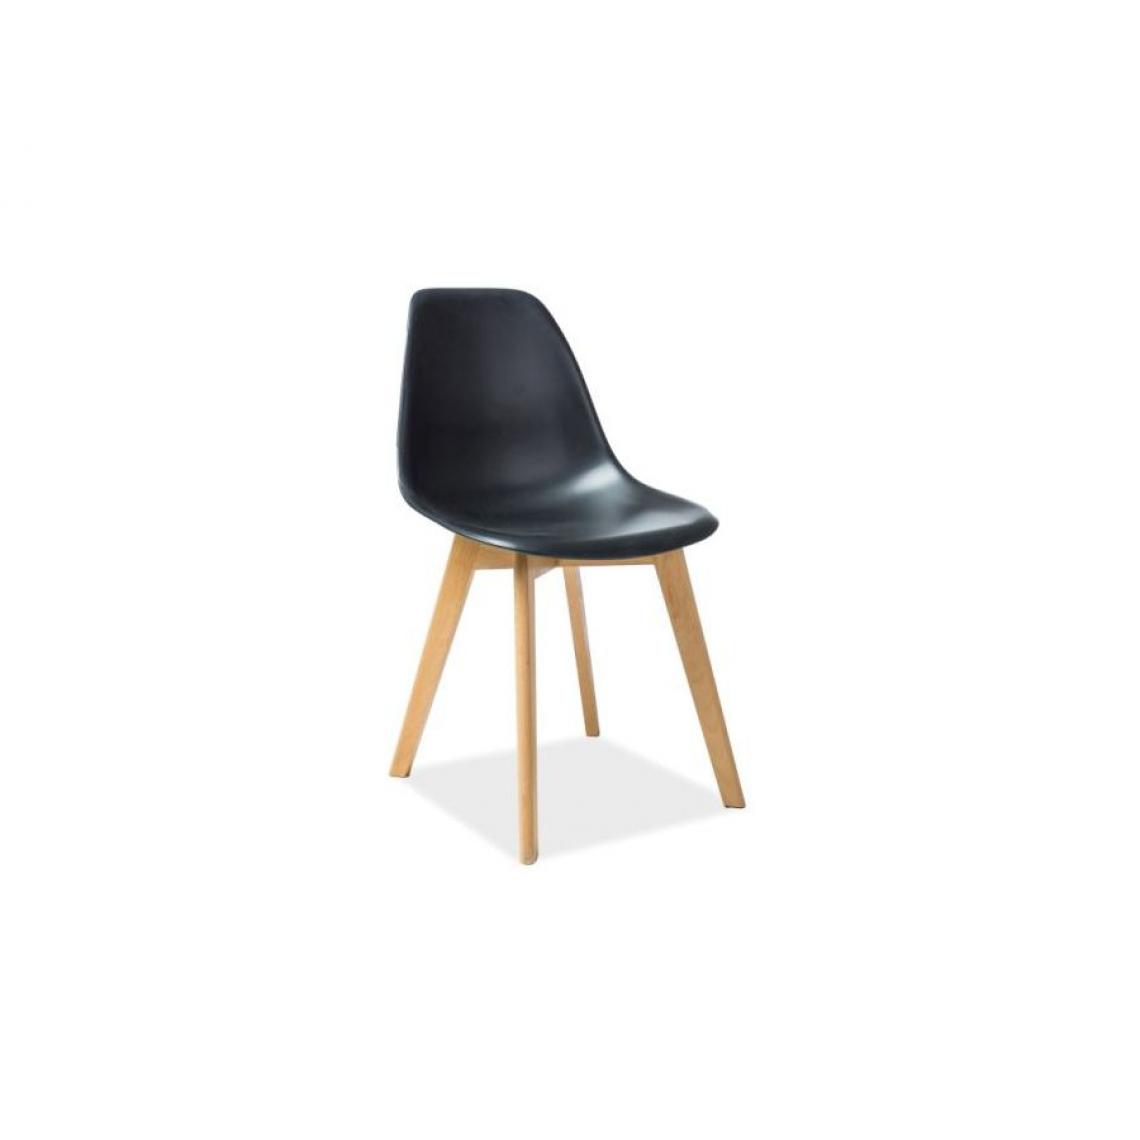 Hucoco - MORIT | Chaise en plastique style scandinave salle à manger | 85x46x38cm | Dossier et assise en polypropylène | Base en bois - Noir - Chaises